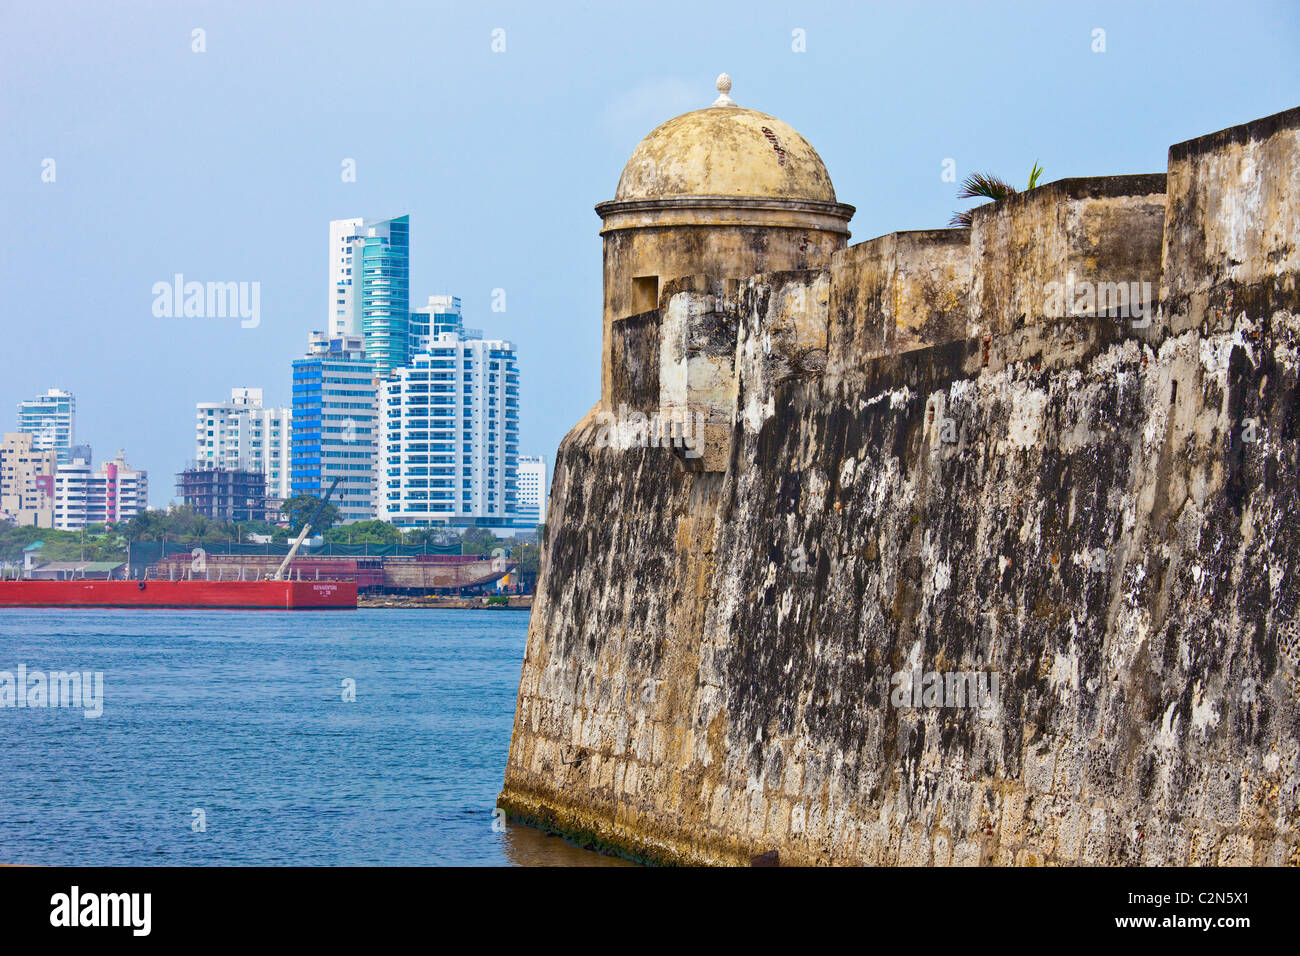 City walls, Cartagena, Colombia Stock Photo